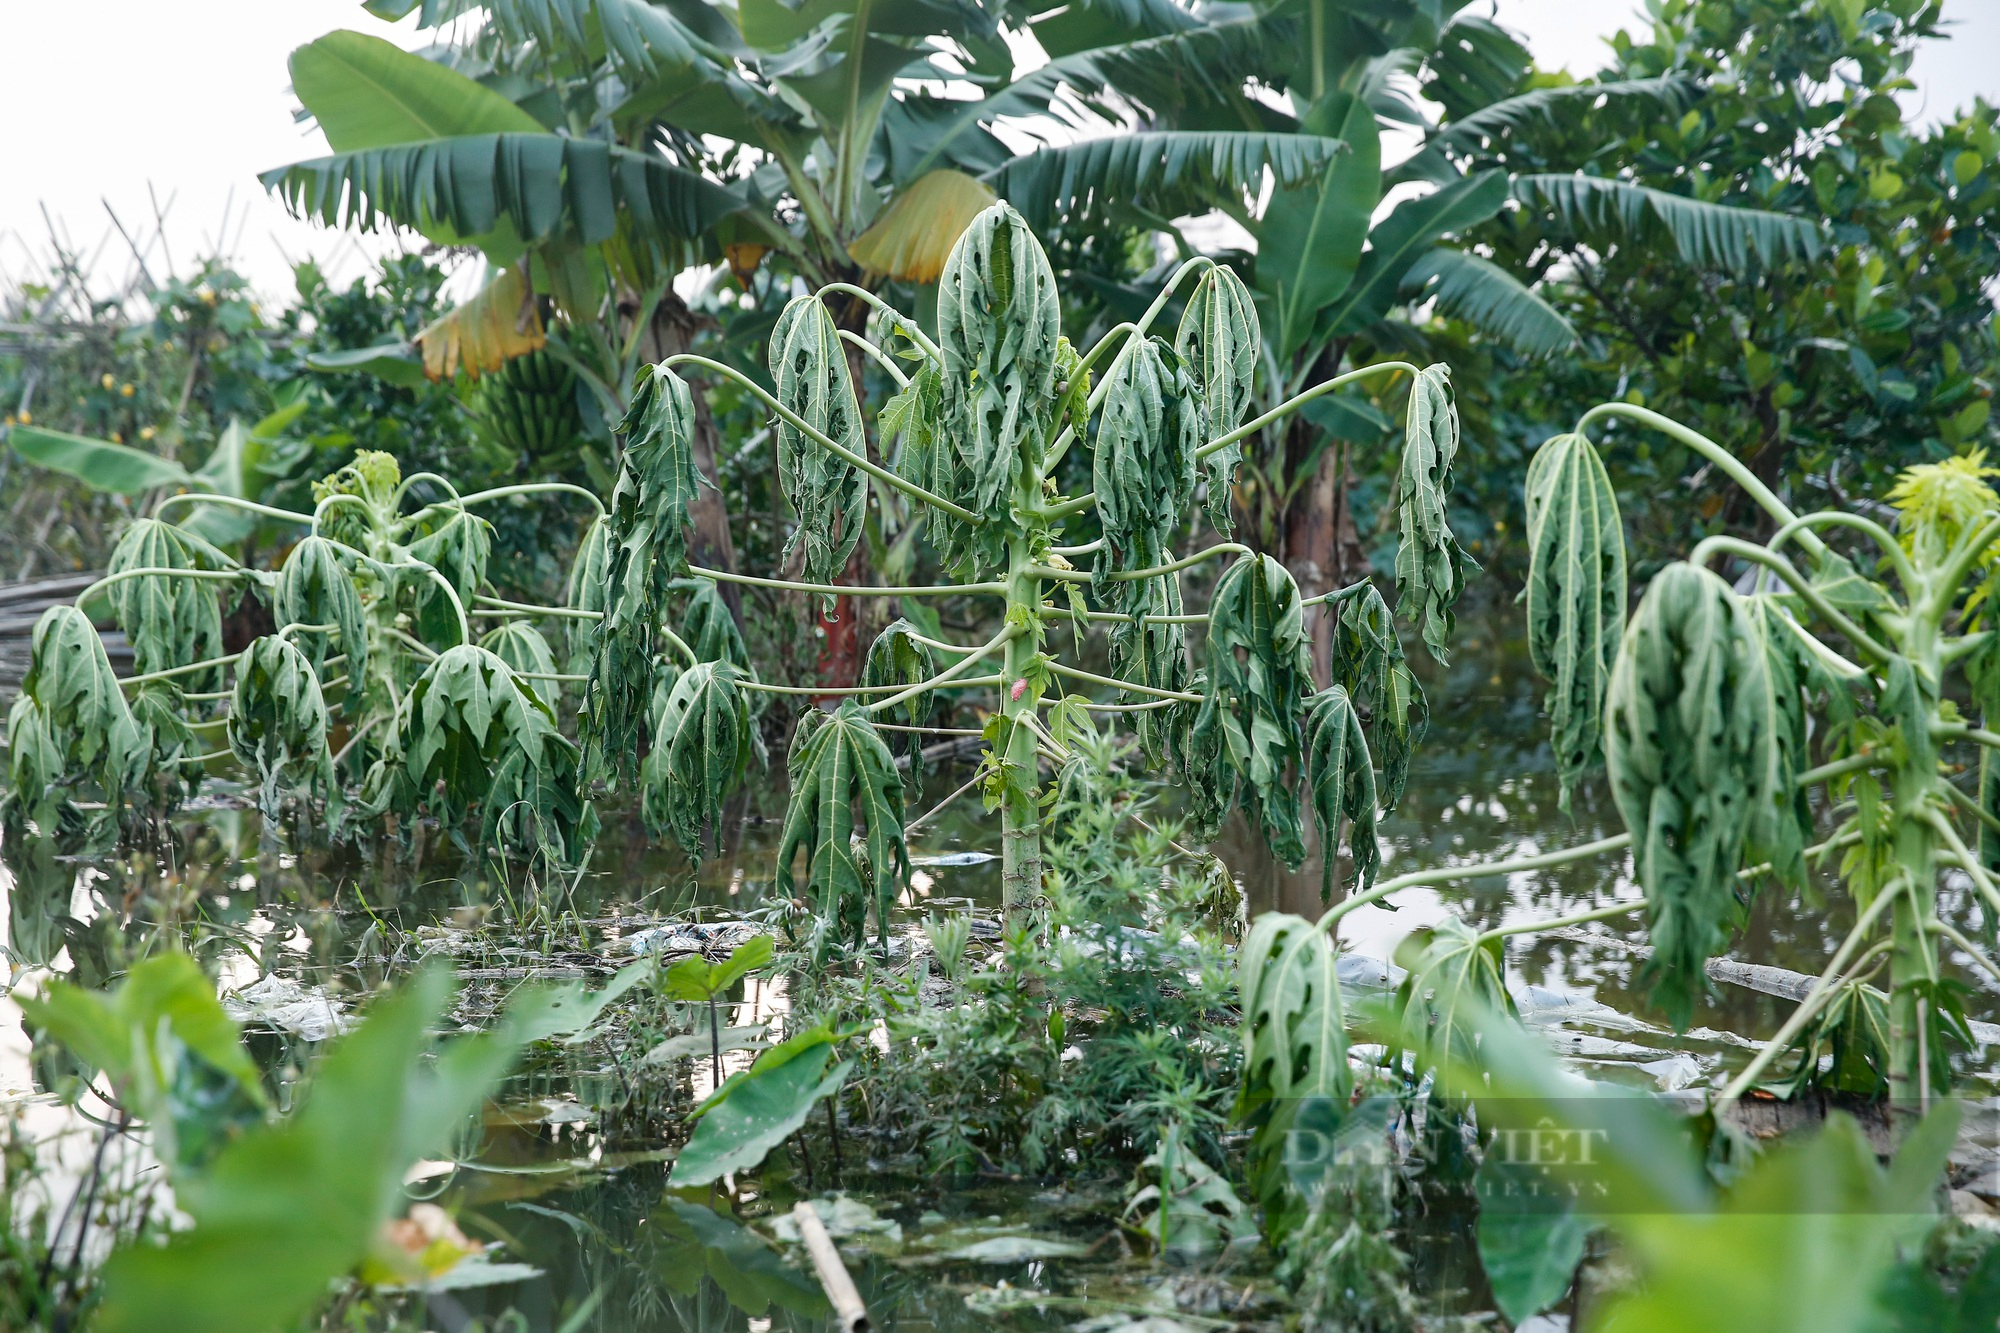 Nông dân ngoại thành Hà Nội khốn khổ vì nước ngập tàn phá hoa màu 4 ngày không rút - Ảnh 4.